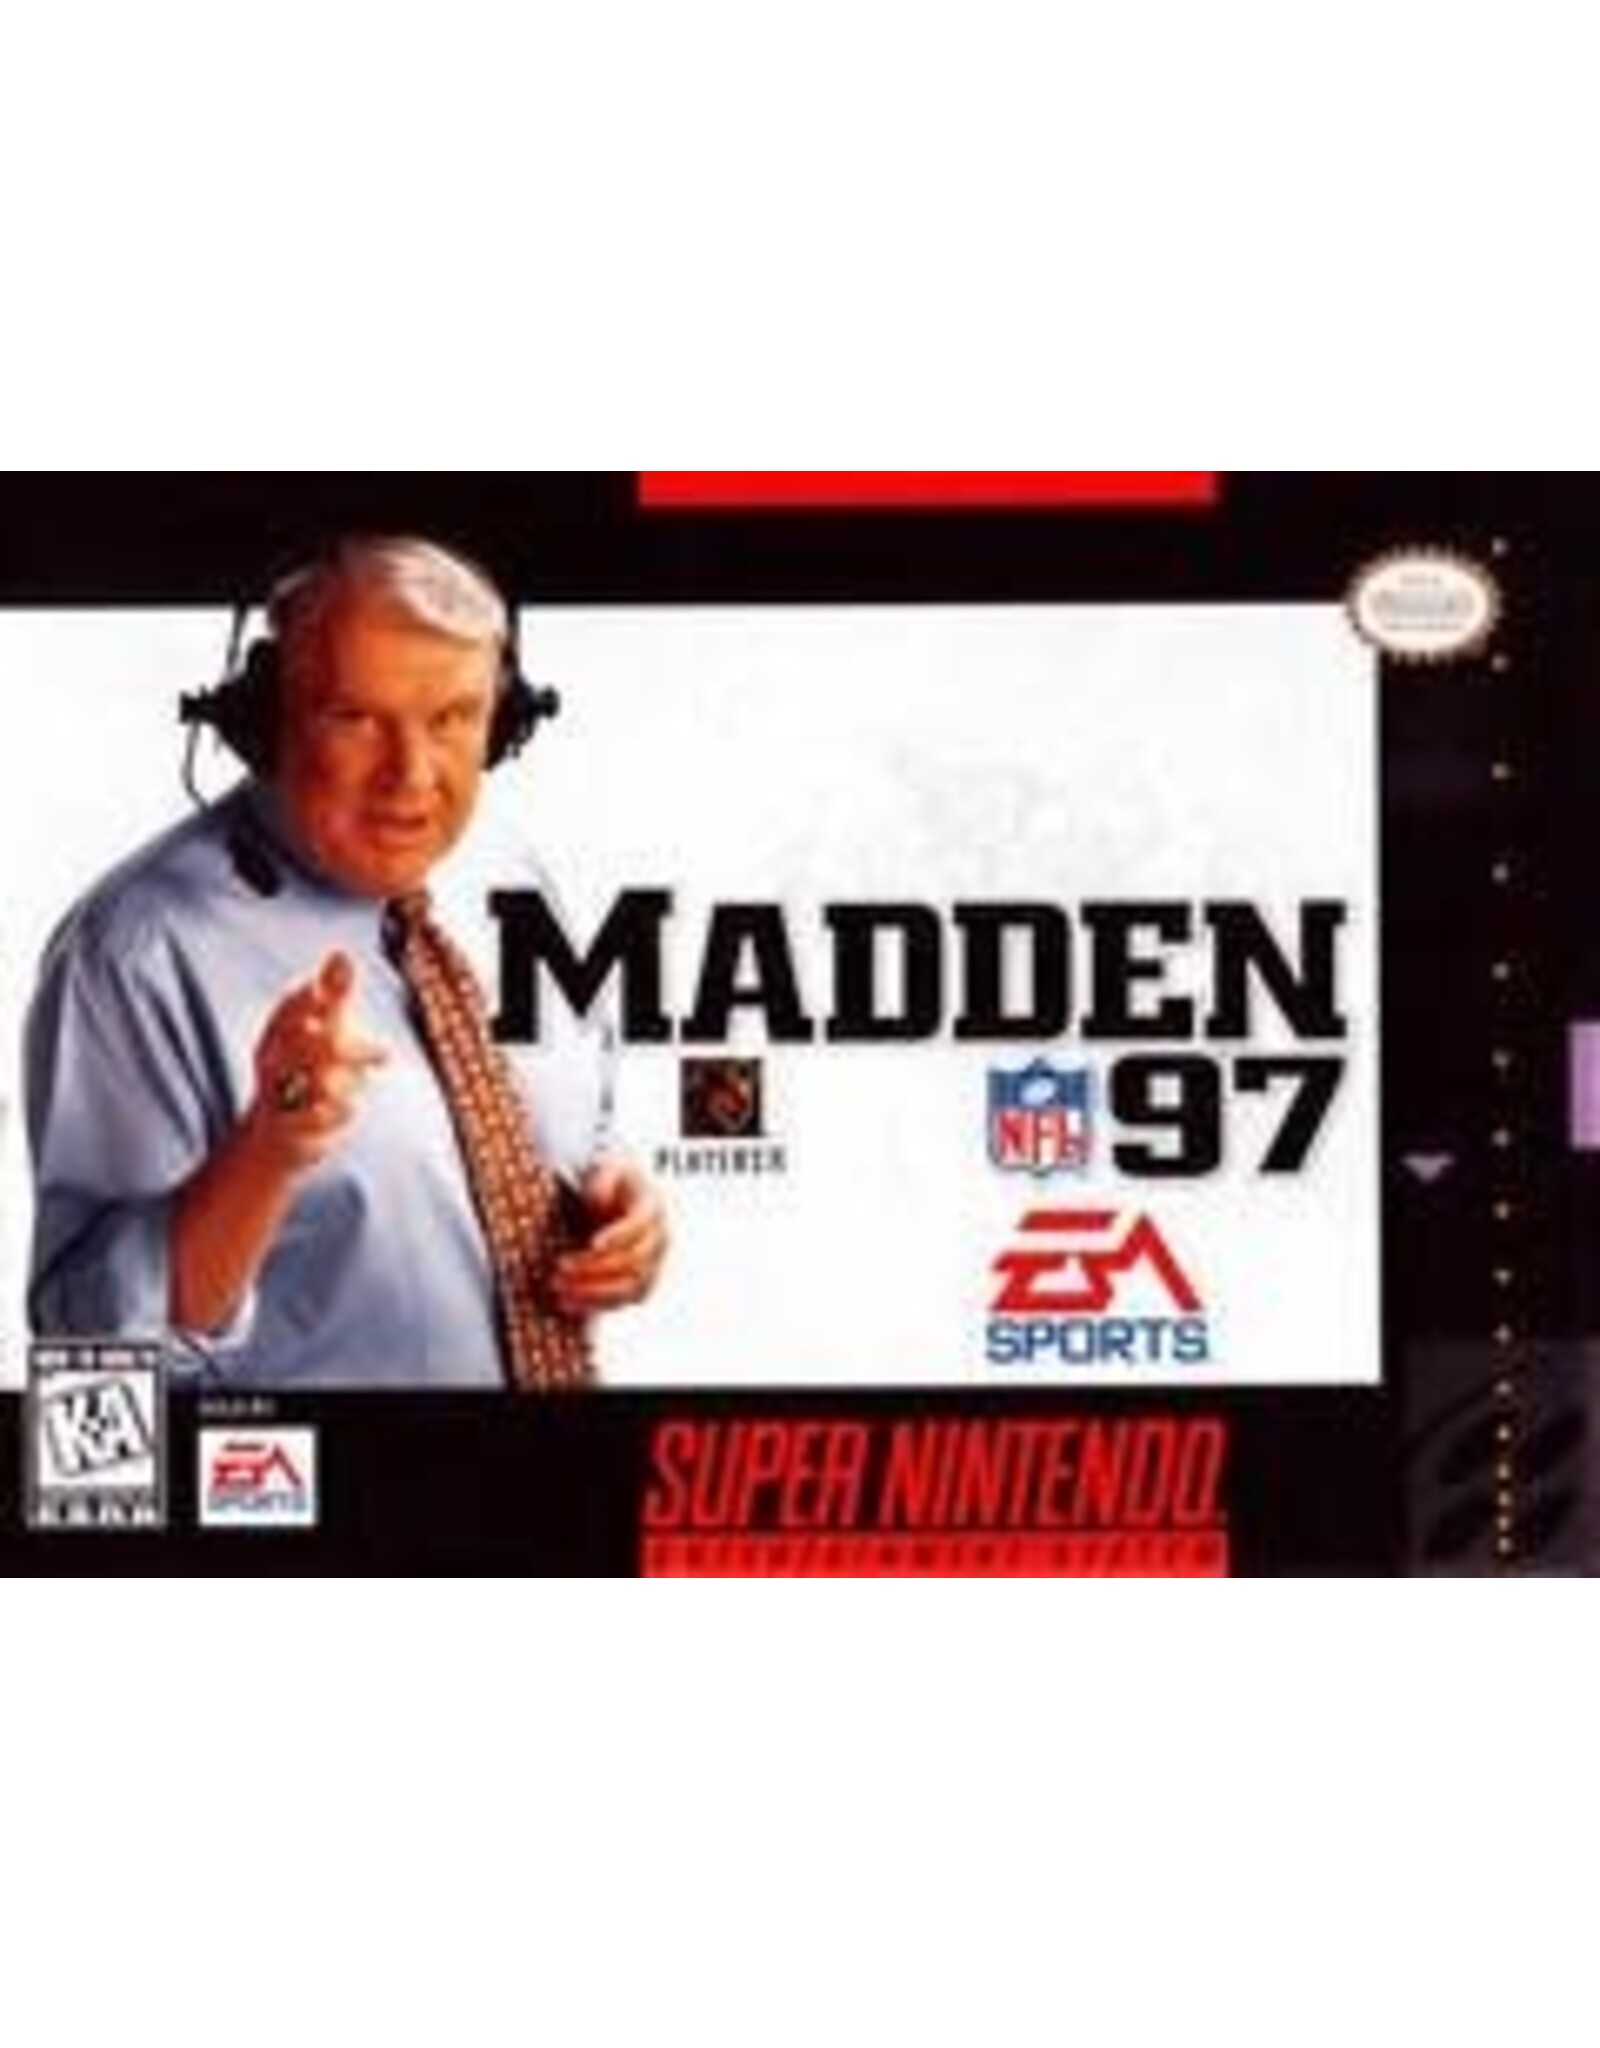 Super Nintendo Madden NFL 97 (Cart Only, Damaged Label)